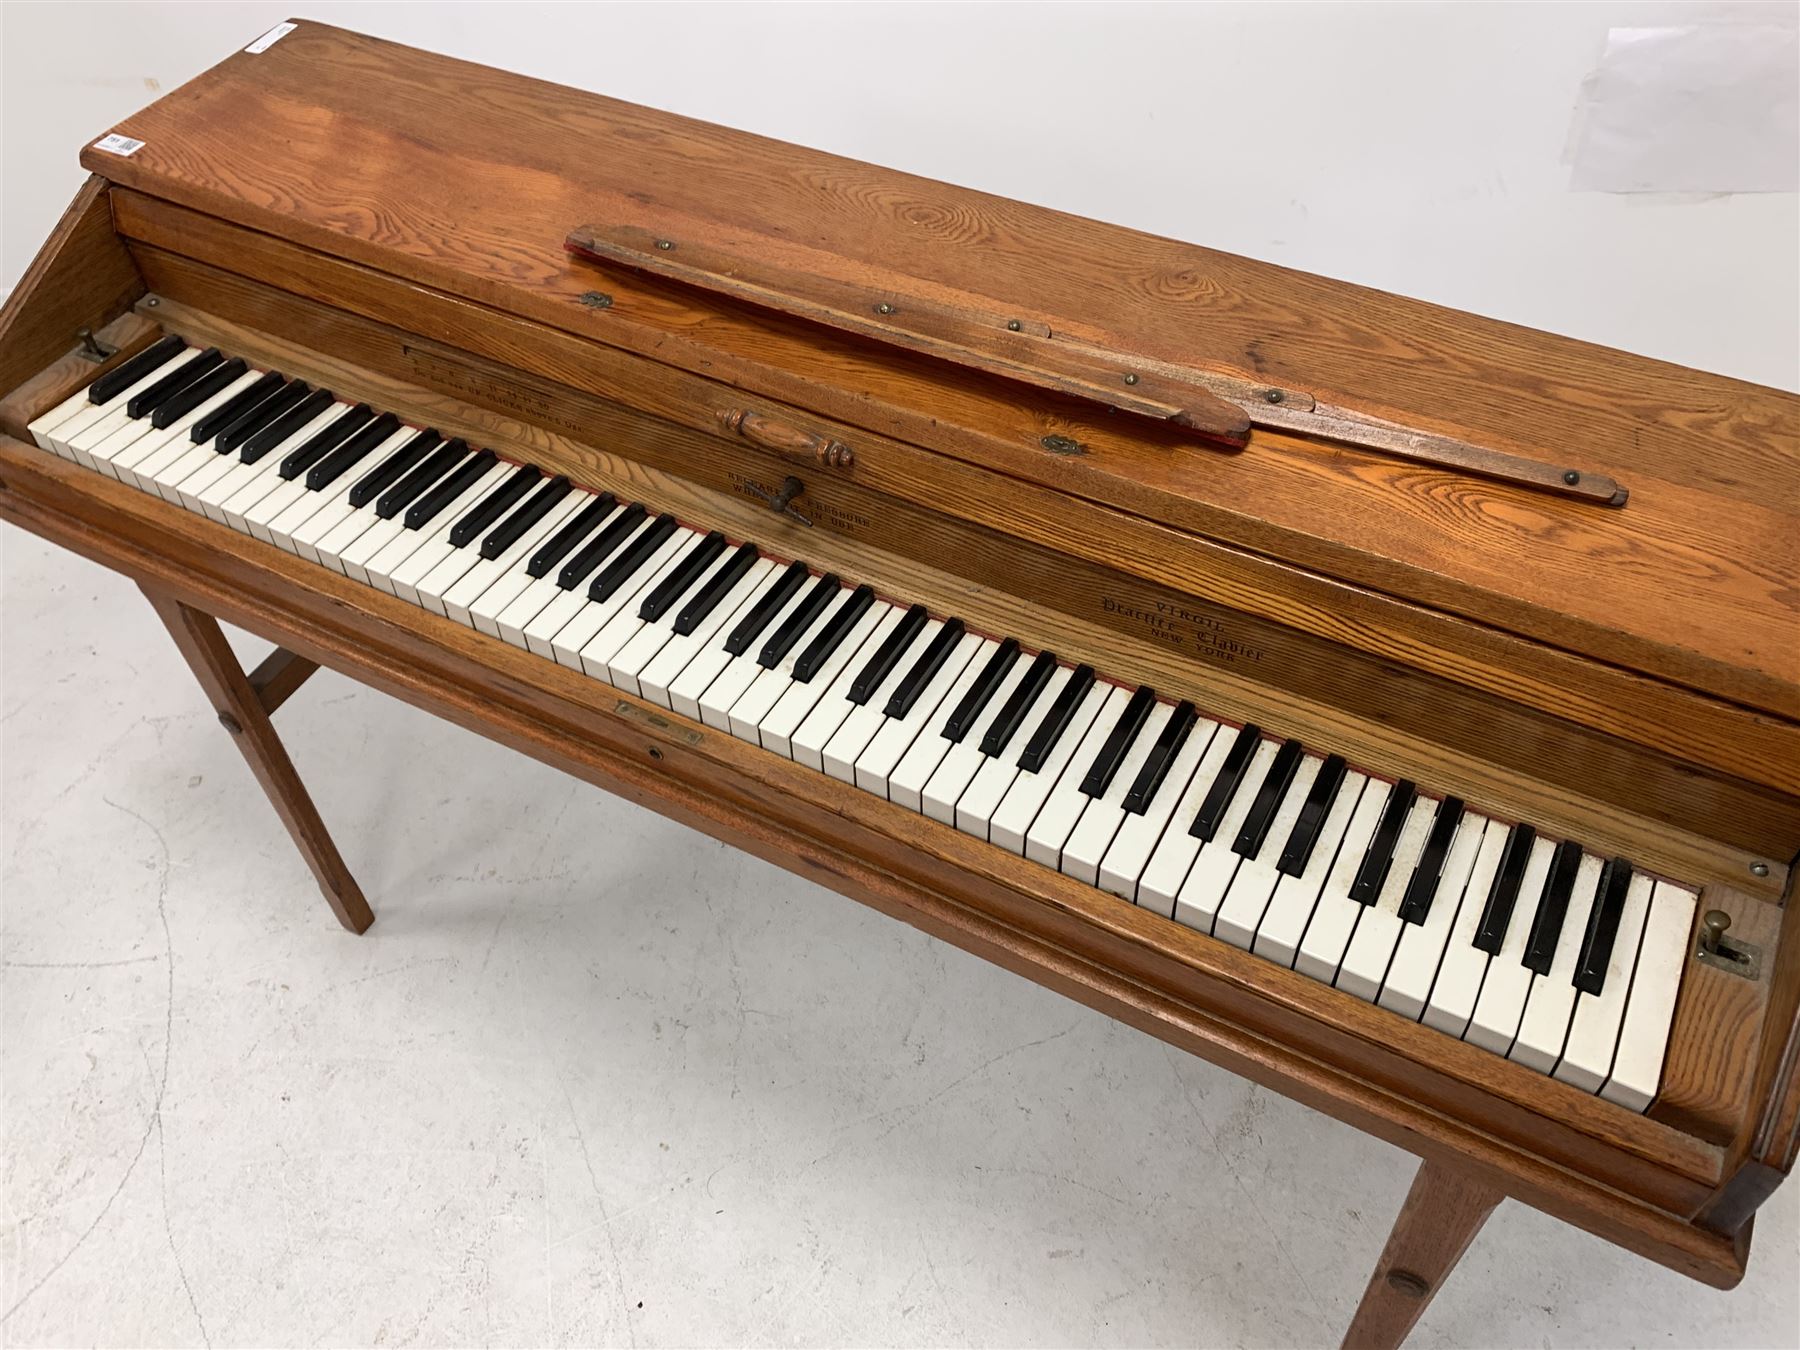 'Virgil Practice Clavier' - early 20th century dummy keyboard in oak case with folding trestle legs - Image 3 of 5